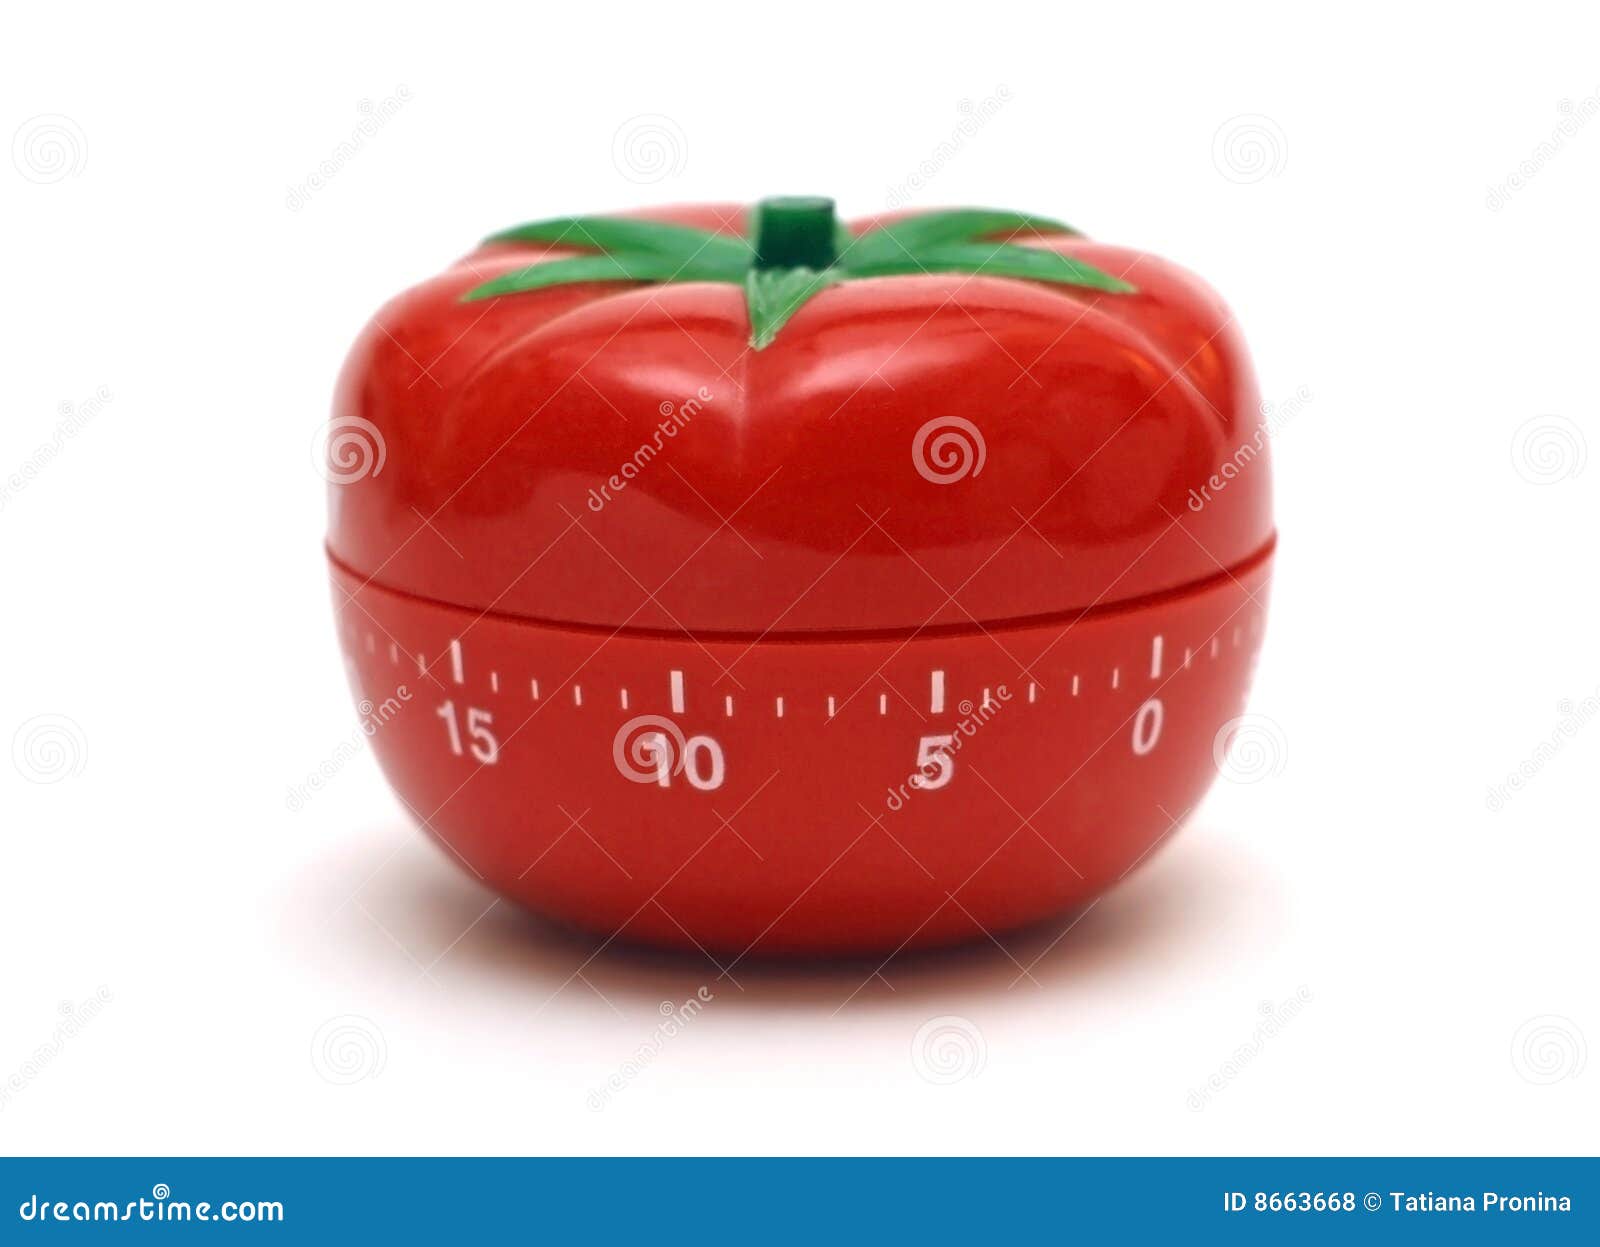 chrome tomato timer